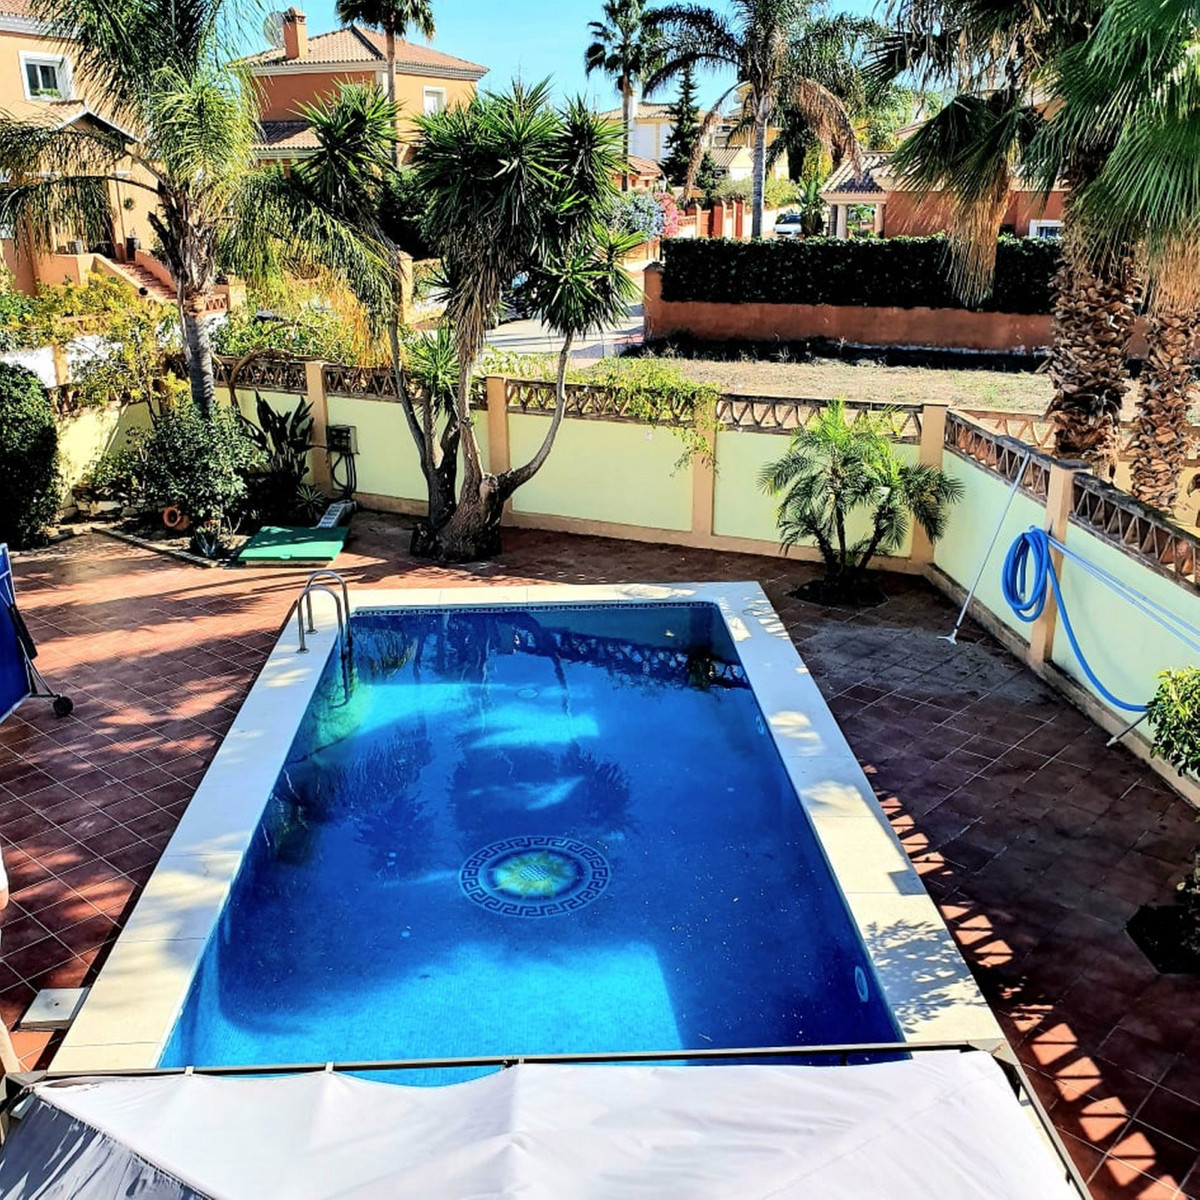 Superb Spacious Villa with a pool in Las Delicias Coin.